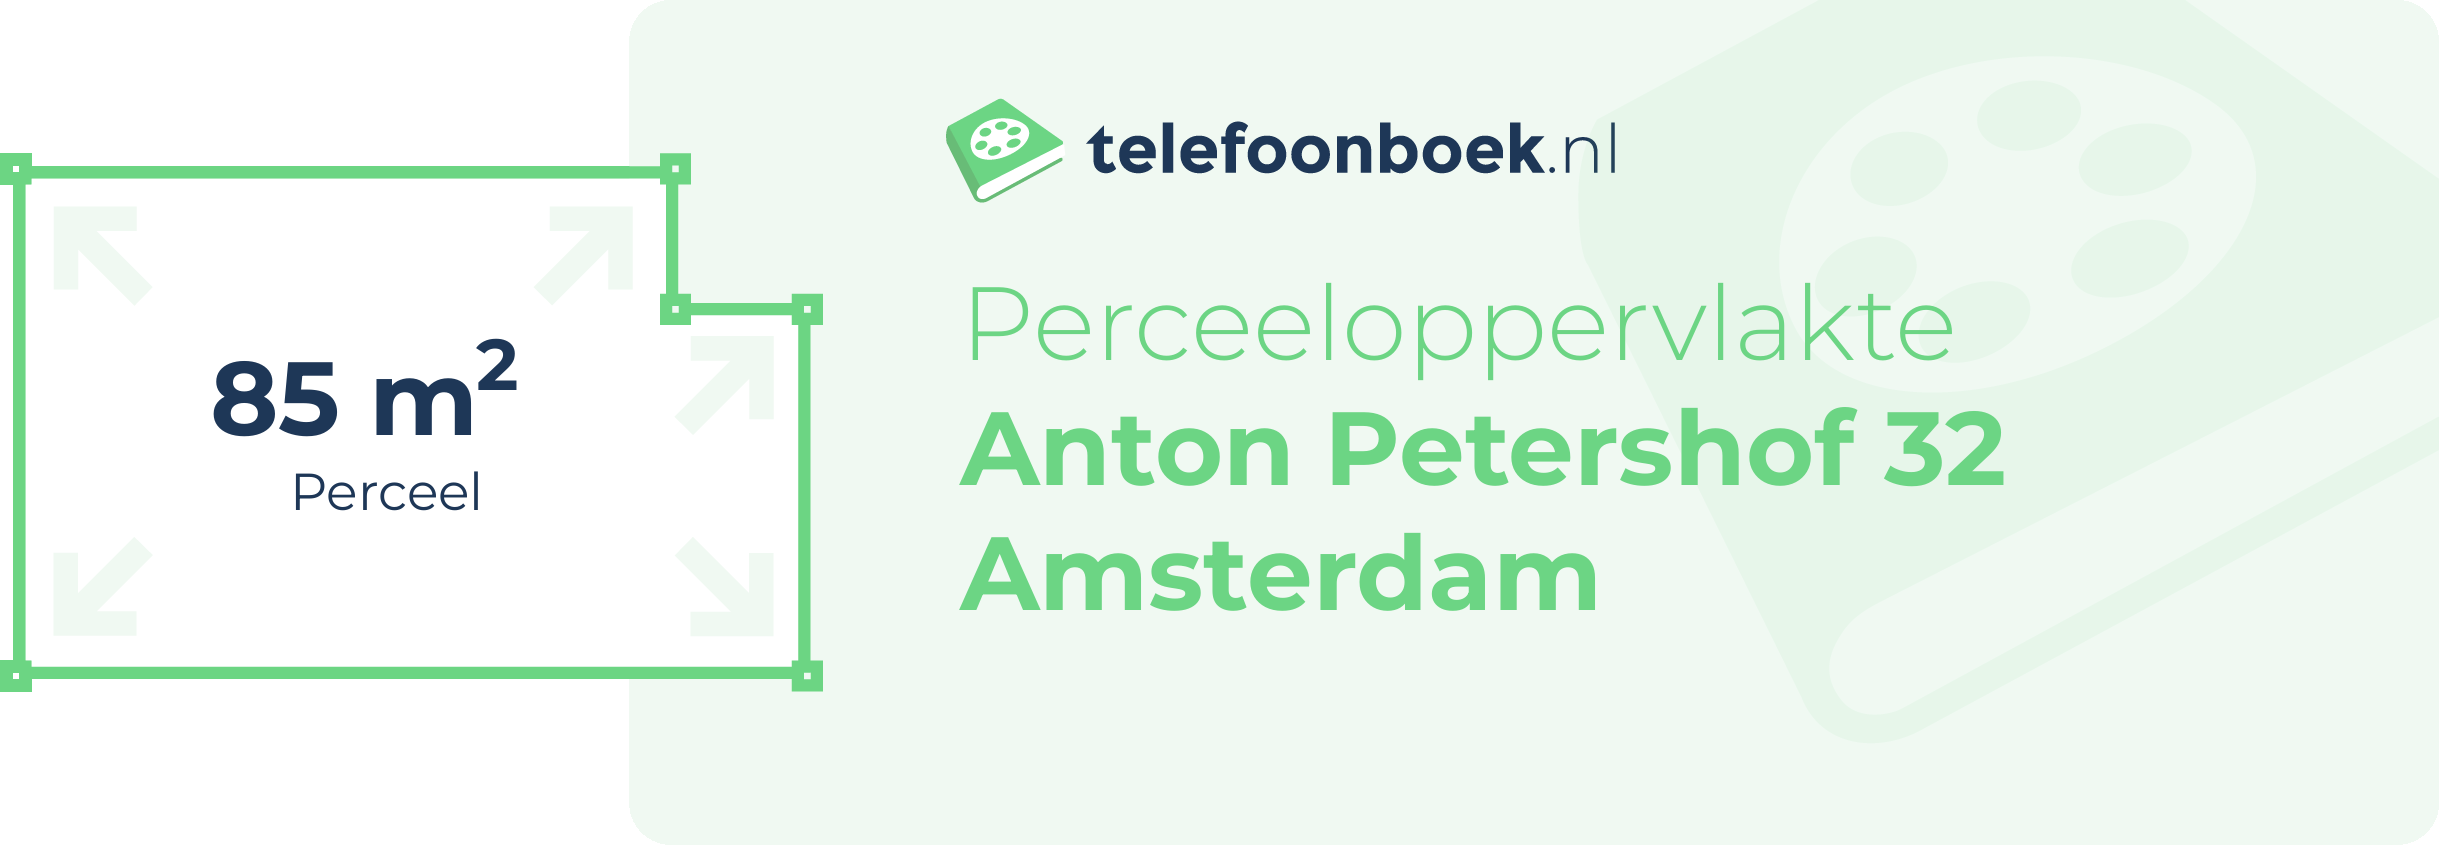 Perceeloppervlakte Anton Petershof 32 Amsterdam